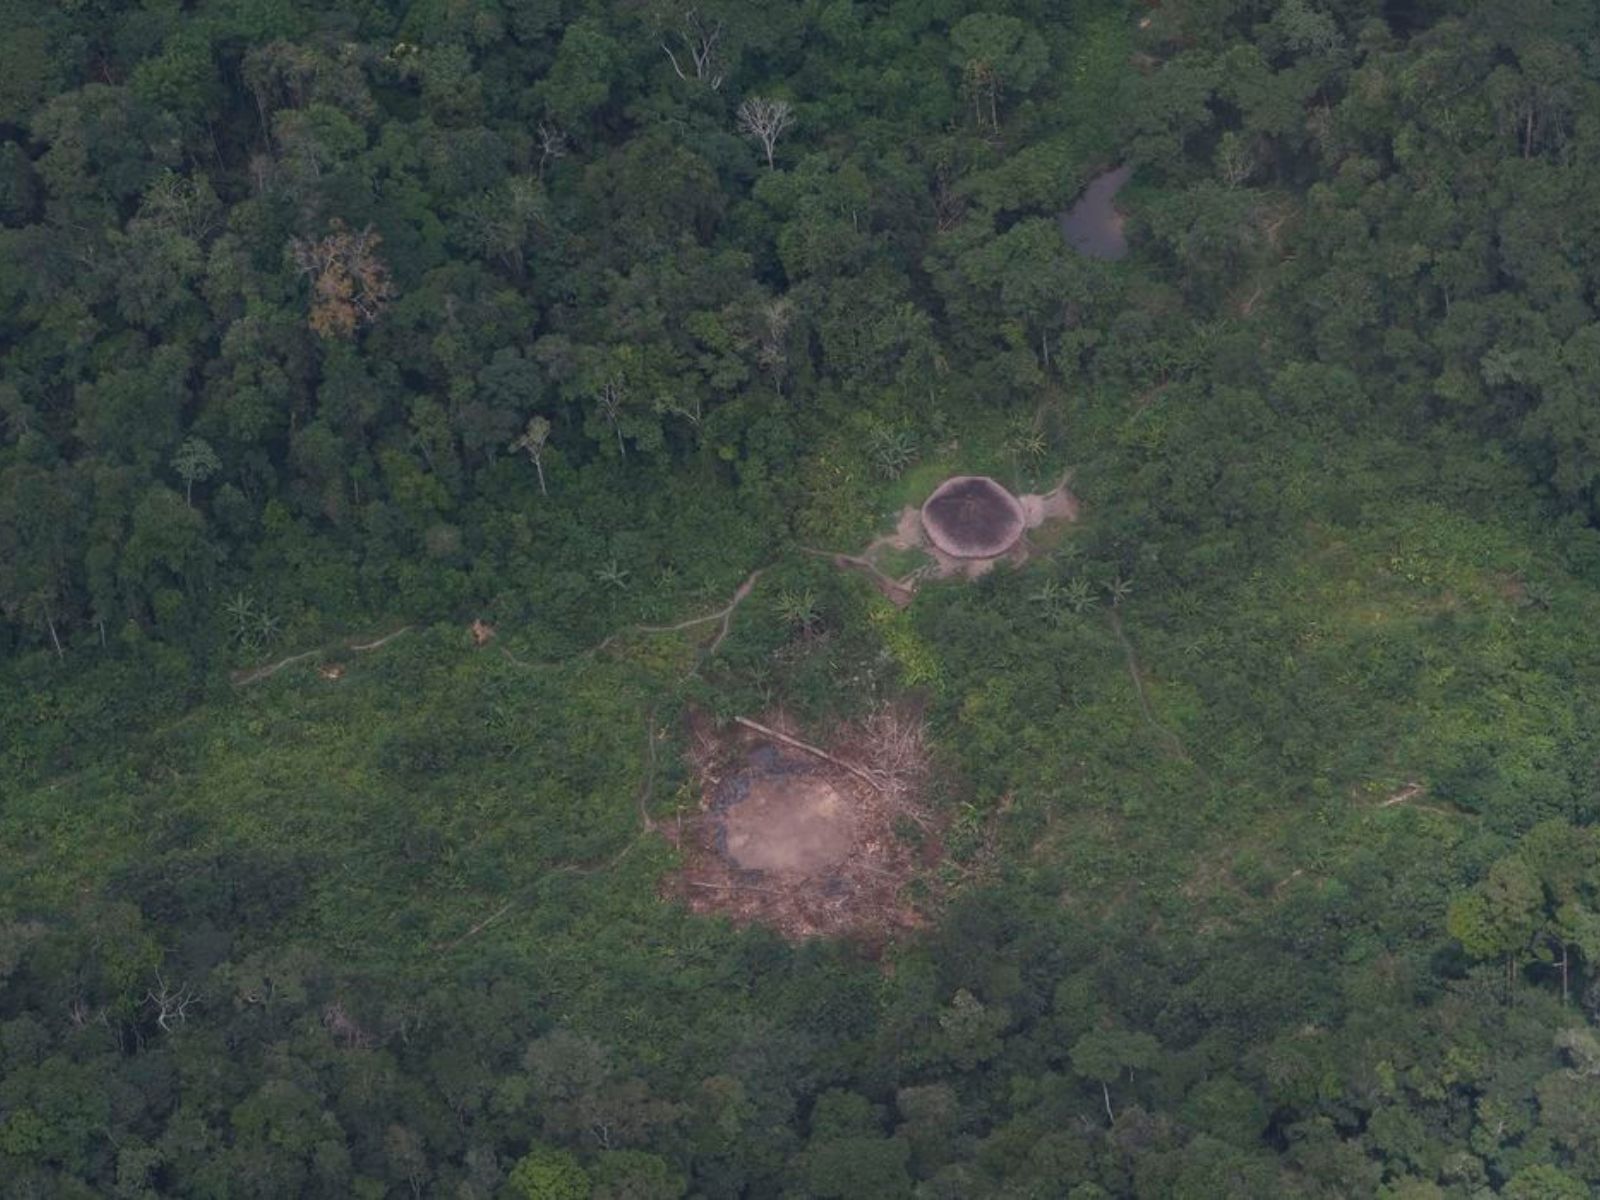 Justiça concede liberdade a garimpeiros presos em Terra Yanomami